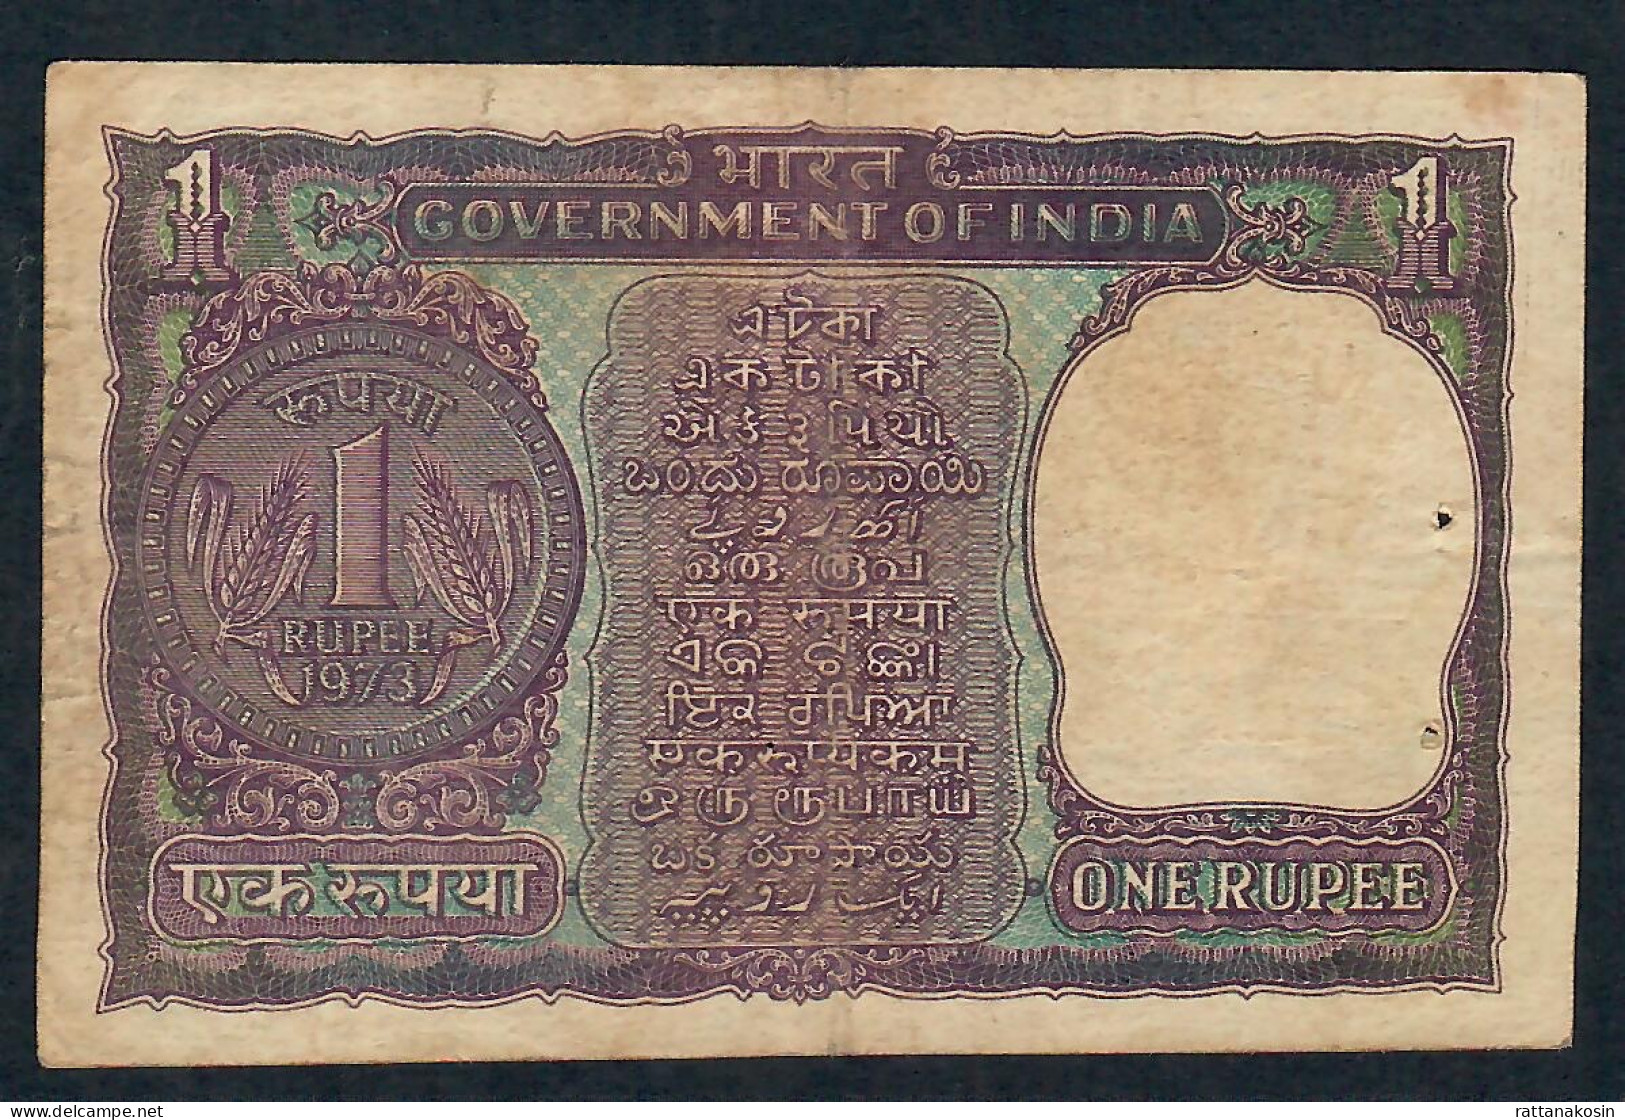 INDIA P77i 1 RUPEE 1973 #R/77 LETTER E Signature KAUL    VF 2 P.h. - Inde